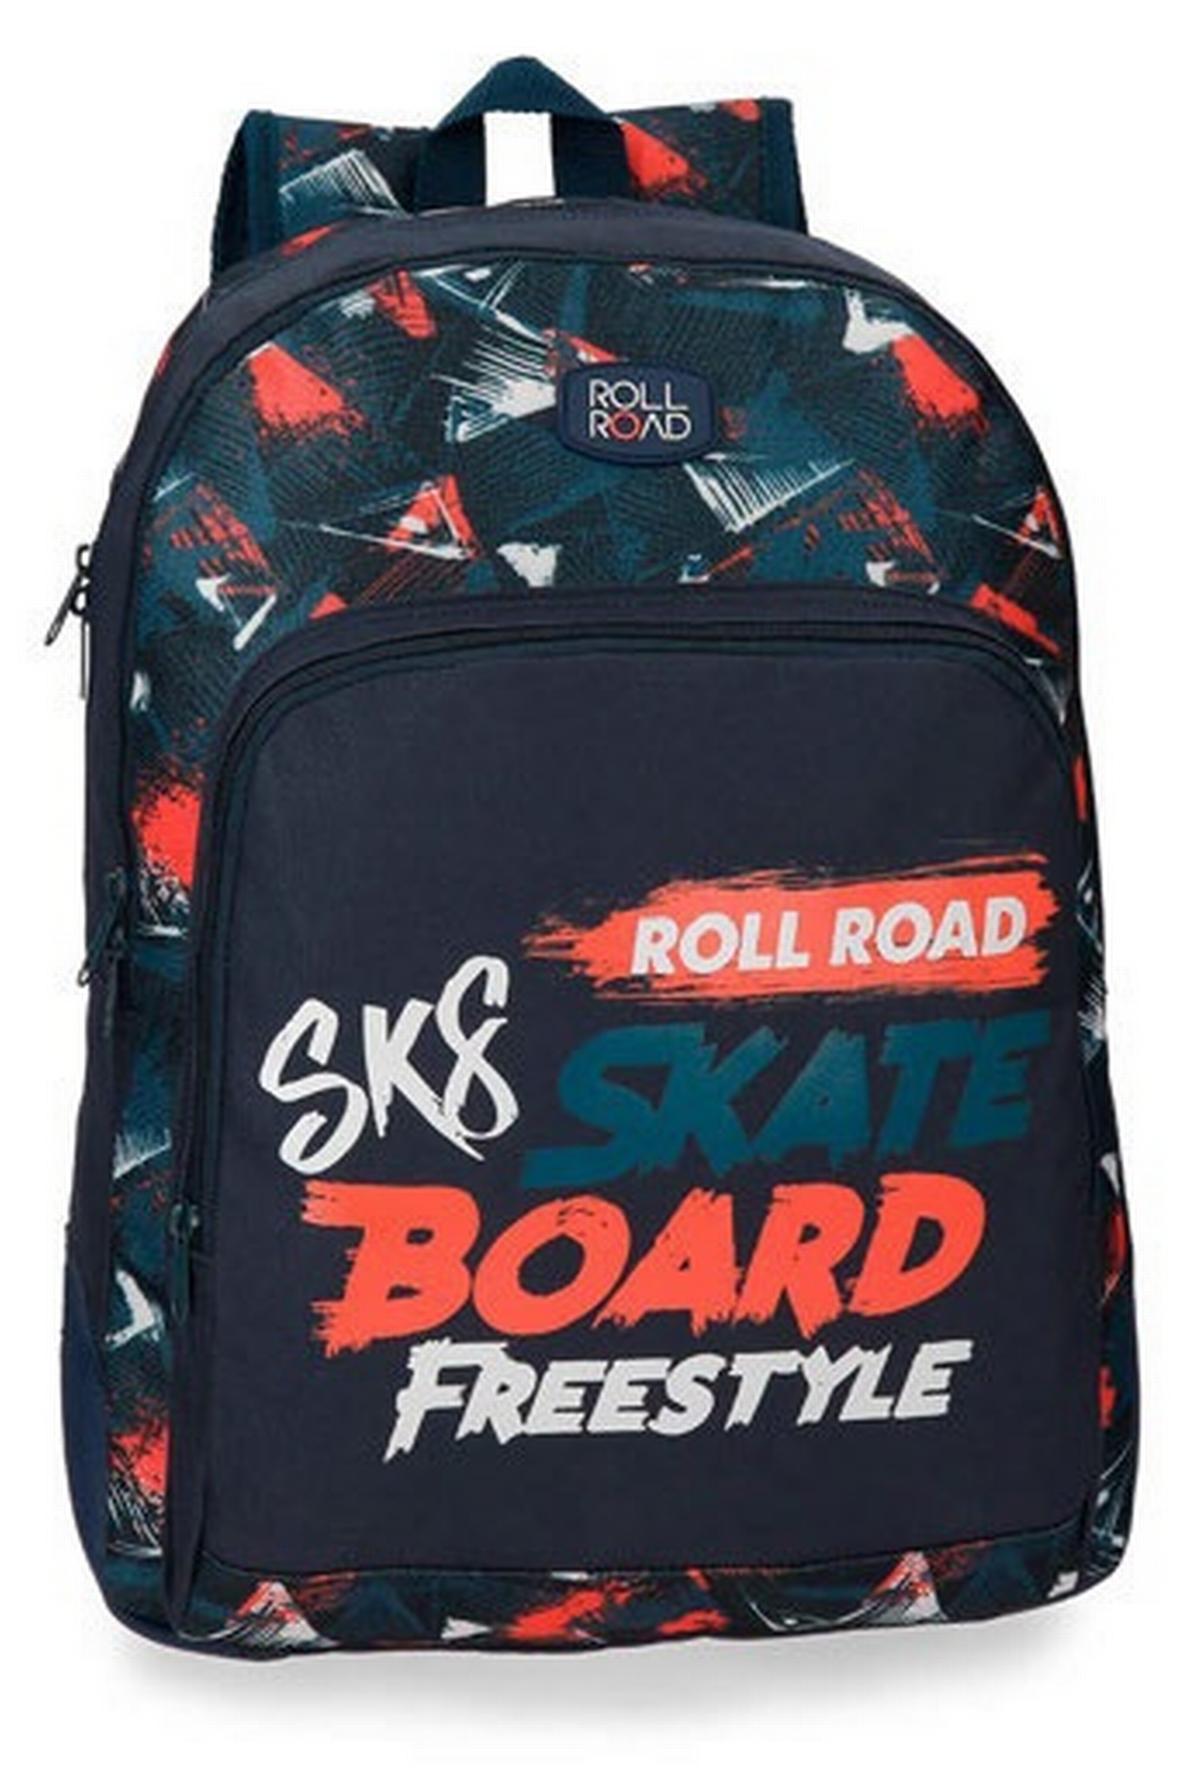 Τσάντα πλάτης Roll road - Freestyle